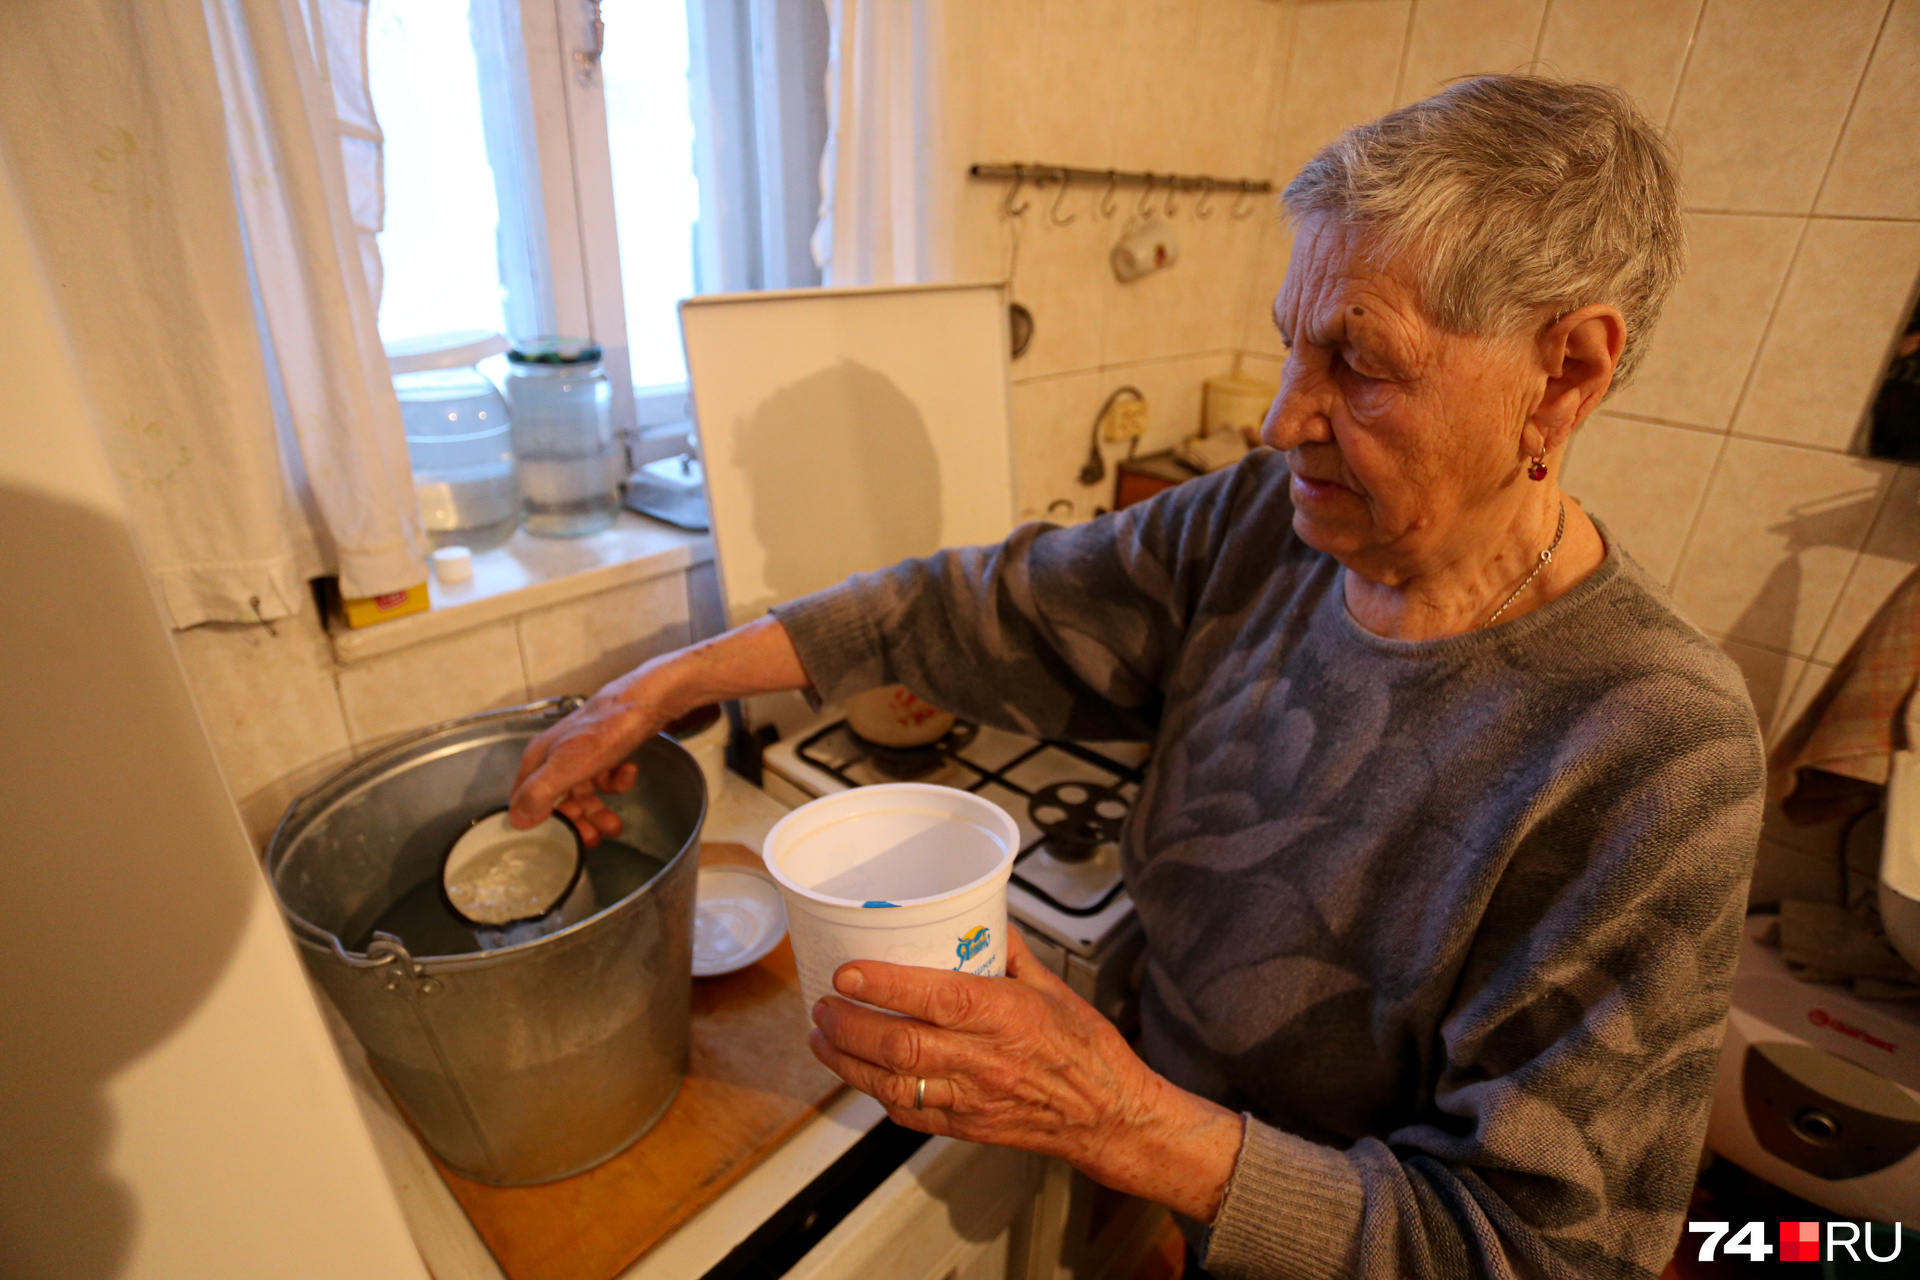 Чтобы расходовать драгоценную воду экономно, Анна Евгеньевна набирает для умывания не больше кружки